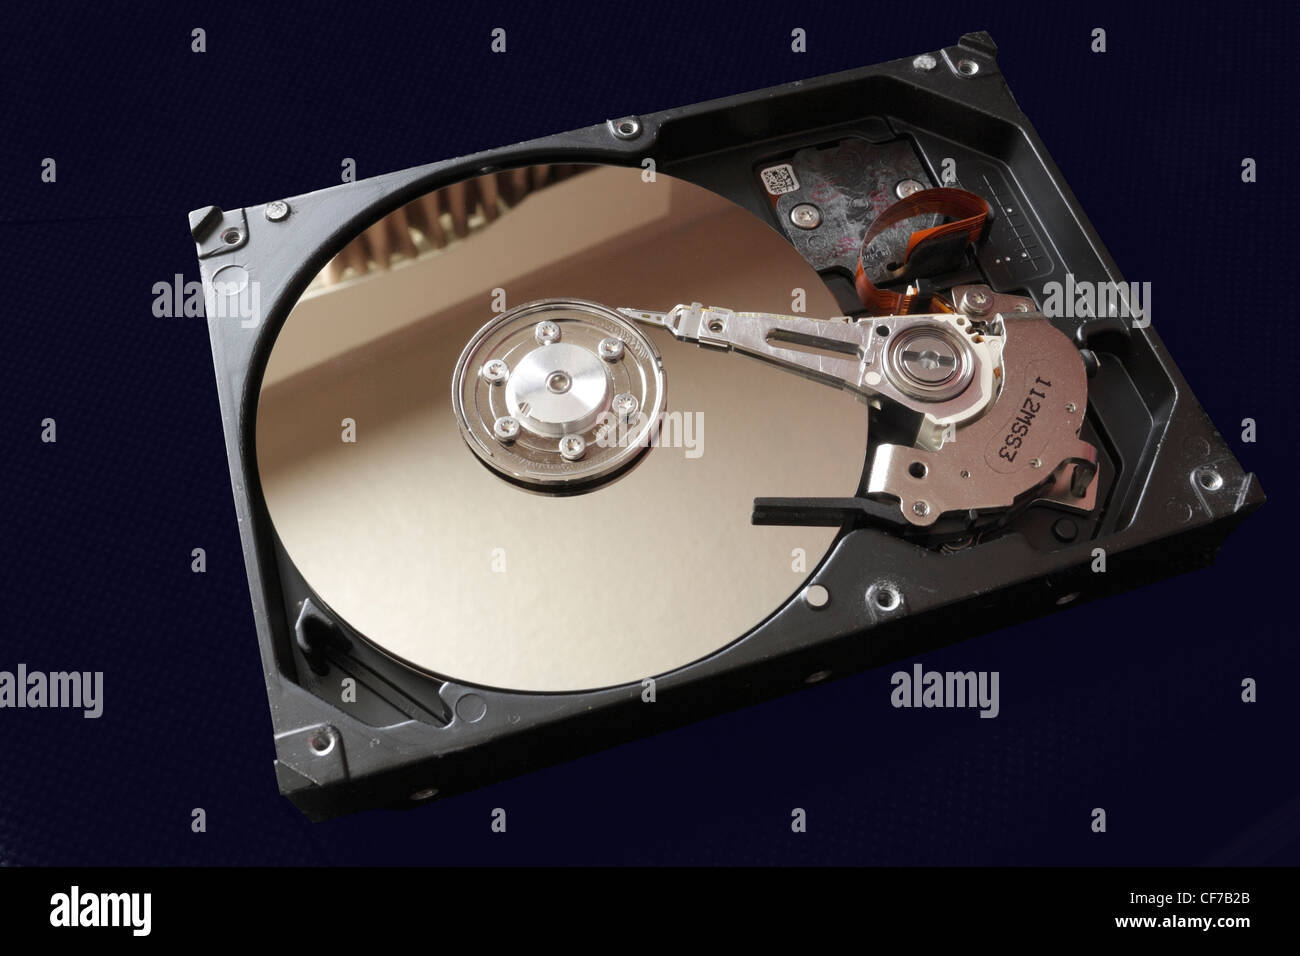 L'intérieur du disque dur d'un ordinateur. Technologie HDD moderne Banque D'Images